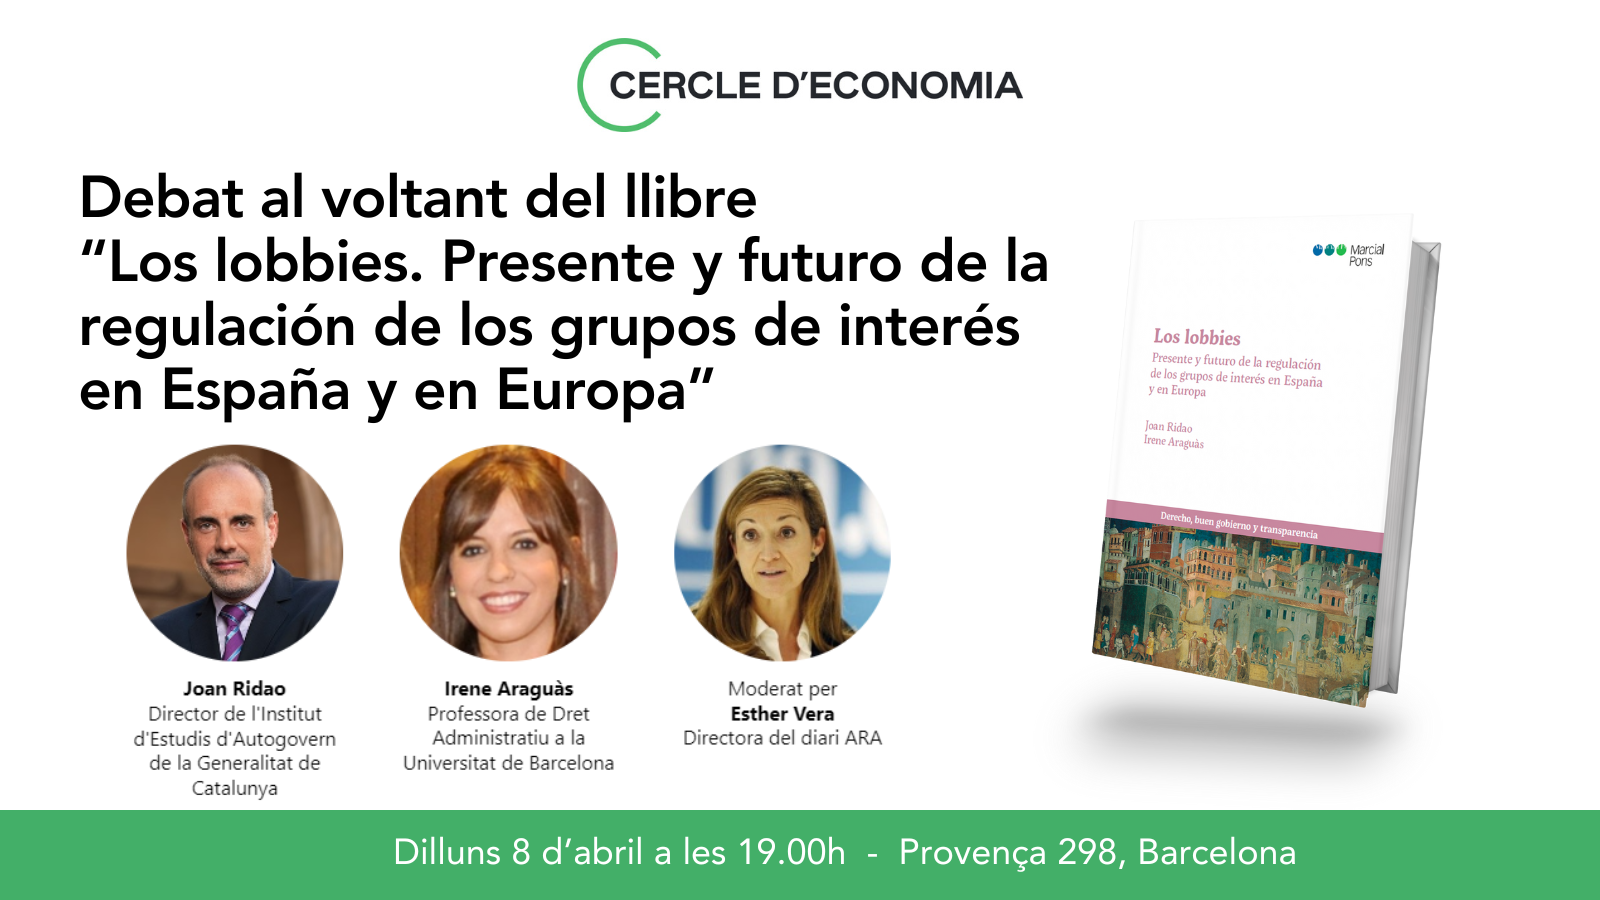 Debat al voltant del llibre "Los lobbies. Presente y futuro de la regulación de los grupos de interés en España y en Europa"